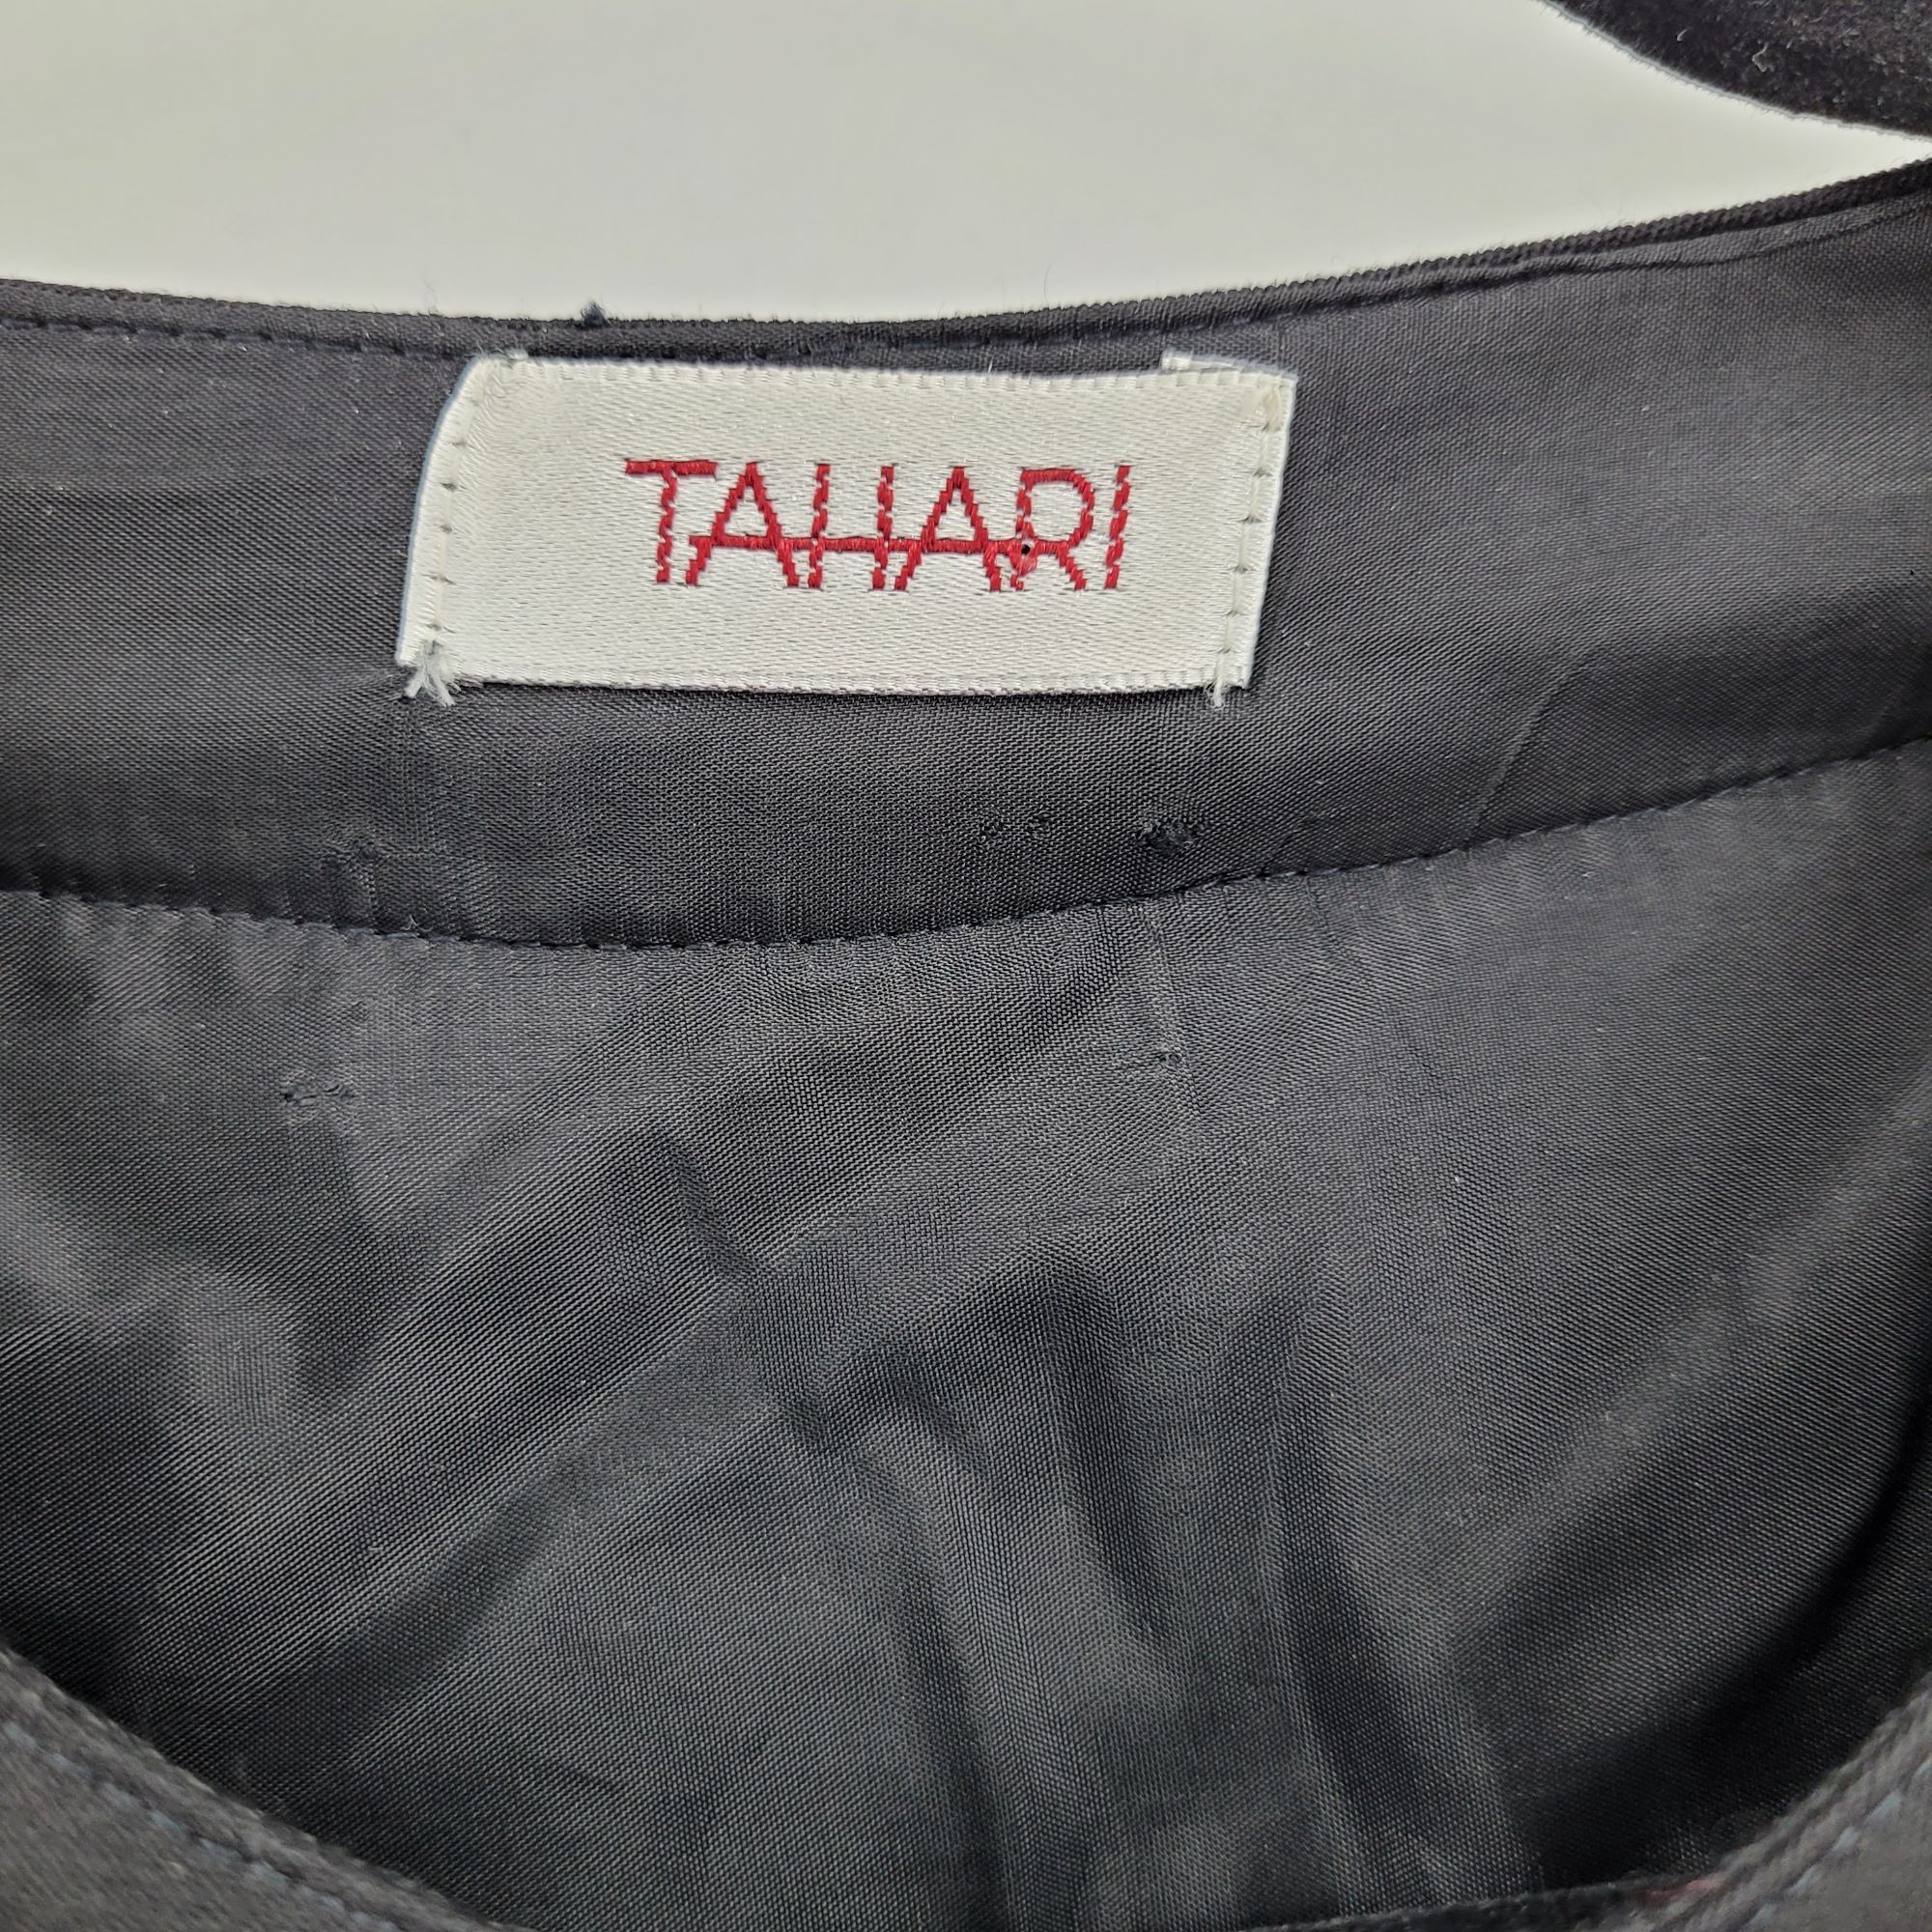 Elie Tahari 80s Tahari Dress Wool Knit Modest Long Sleeve Maxi Black Size M / US 6-8 / IT 42-44 - 10 Thumbnail